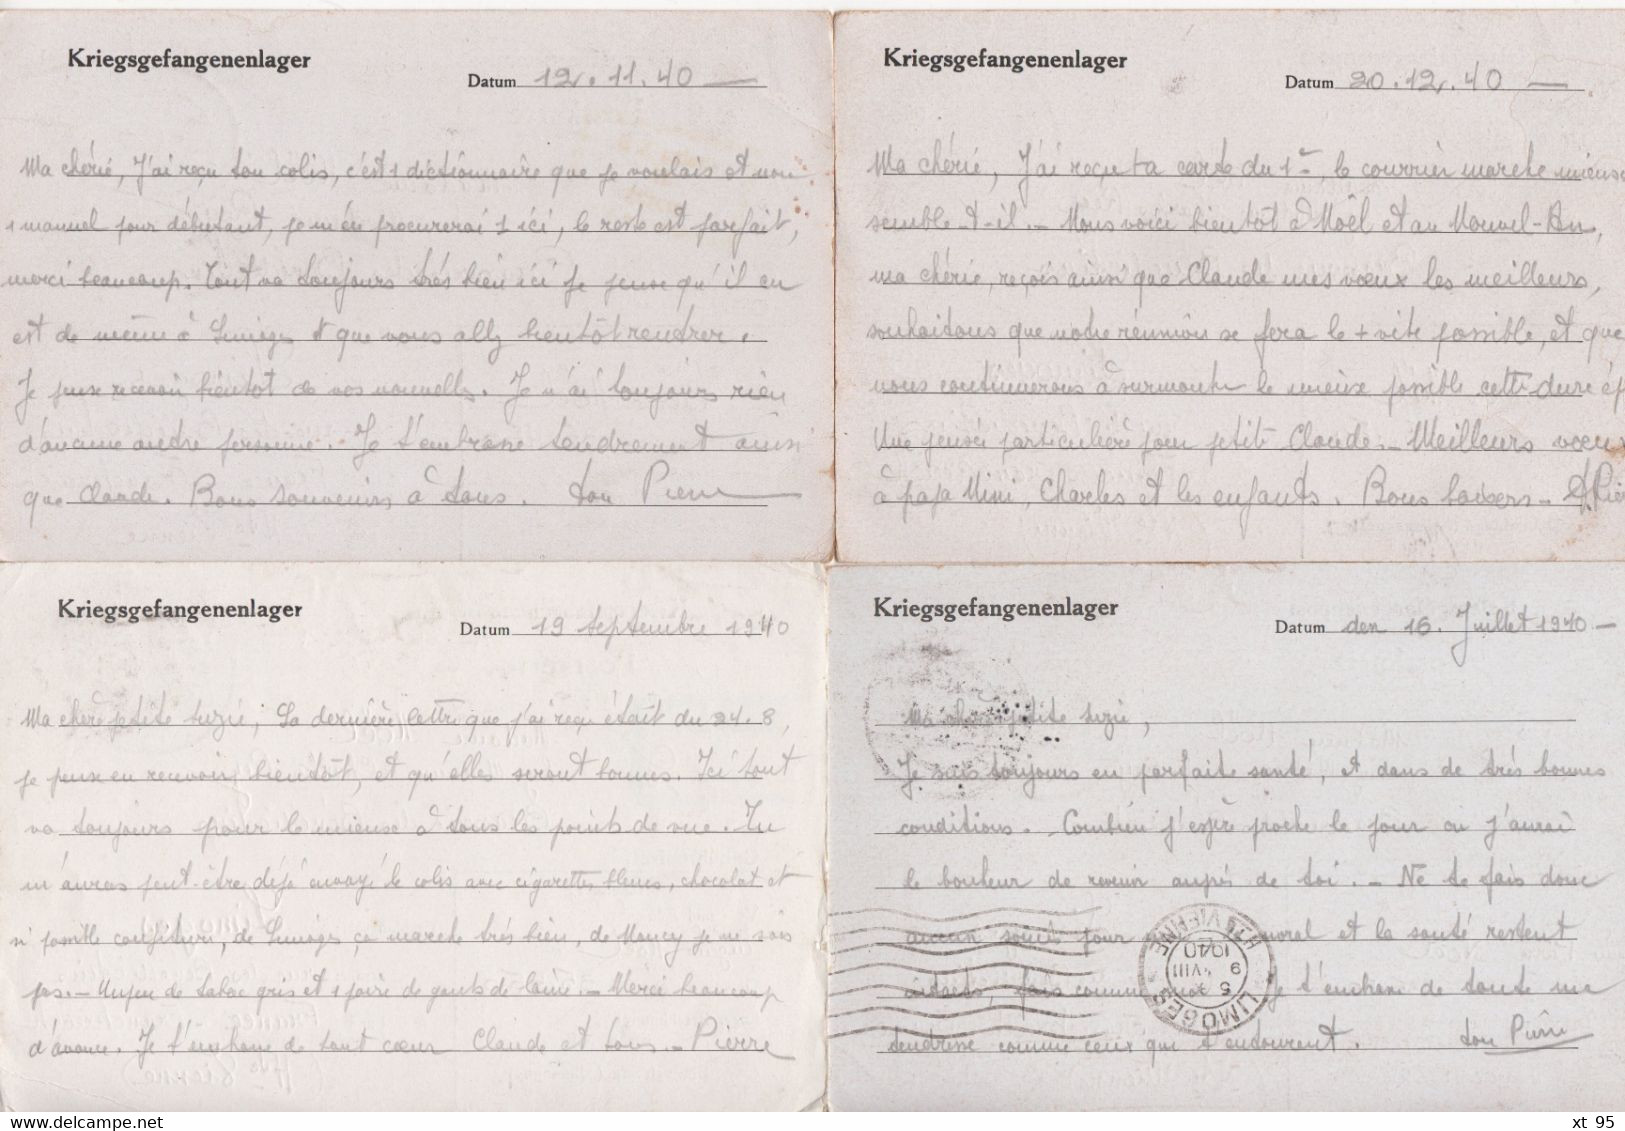 Stalag XB - Archive de 40 correspondances a destination de Limoges - prisonnier de guerre - 1940-1941